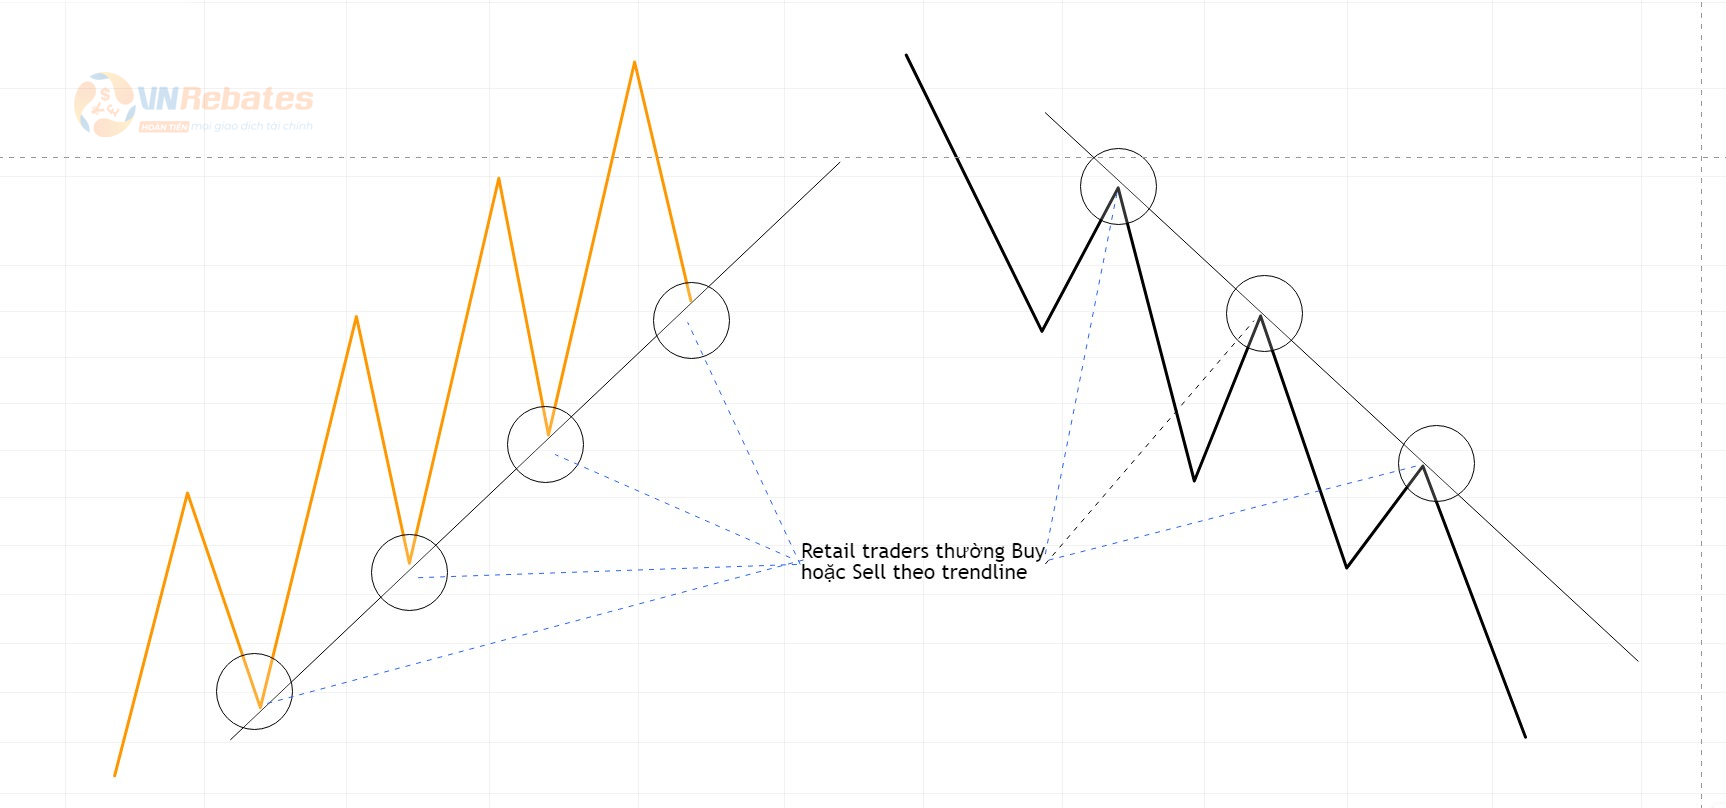 Hình 3. Trader thường giao dịch theo Trendline.